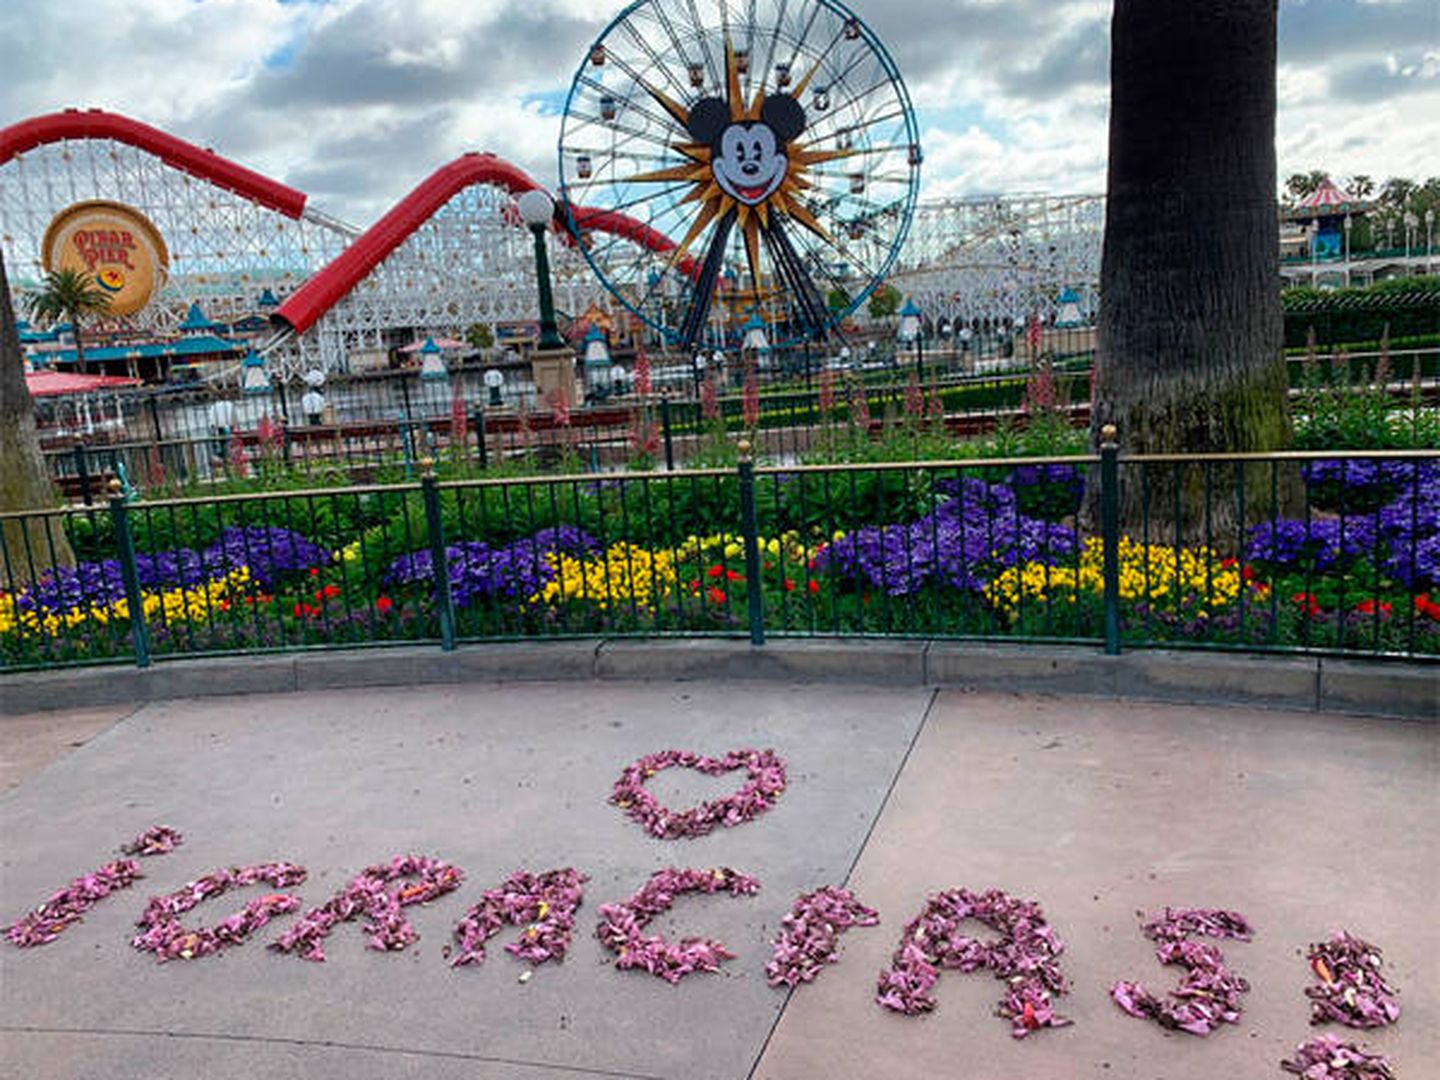 El agradecimiento en español en el Disneyland Resort de Anaheim (Foto: Disney)